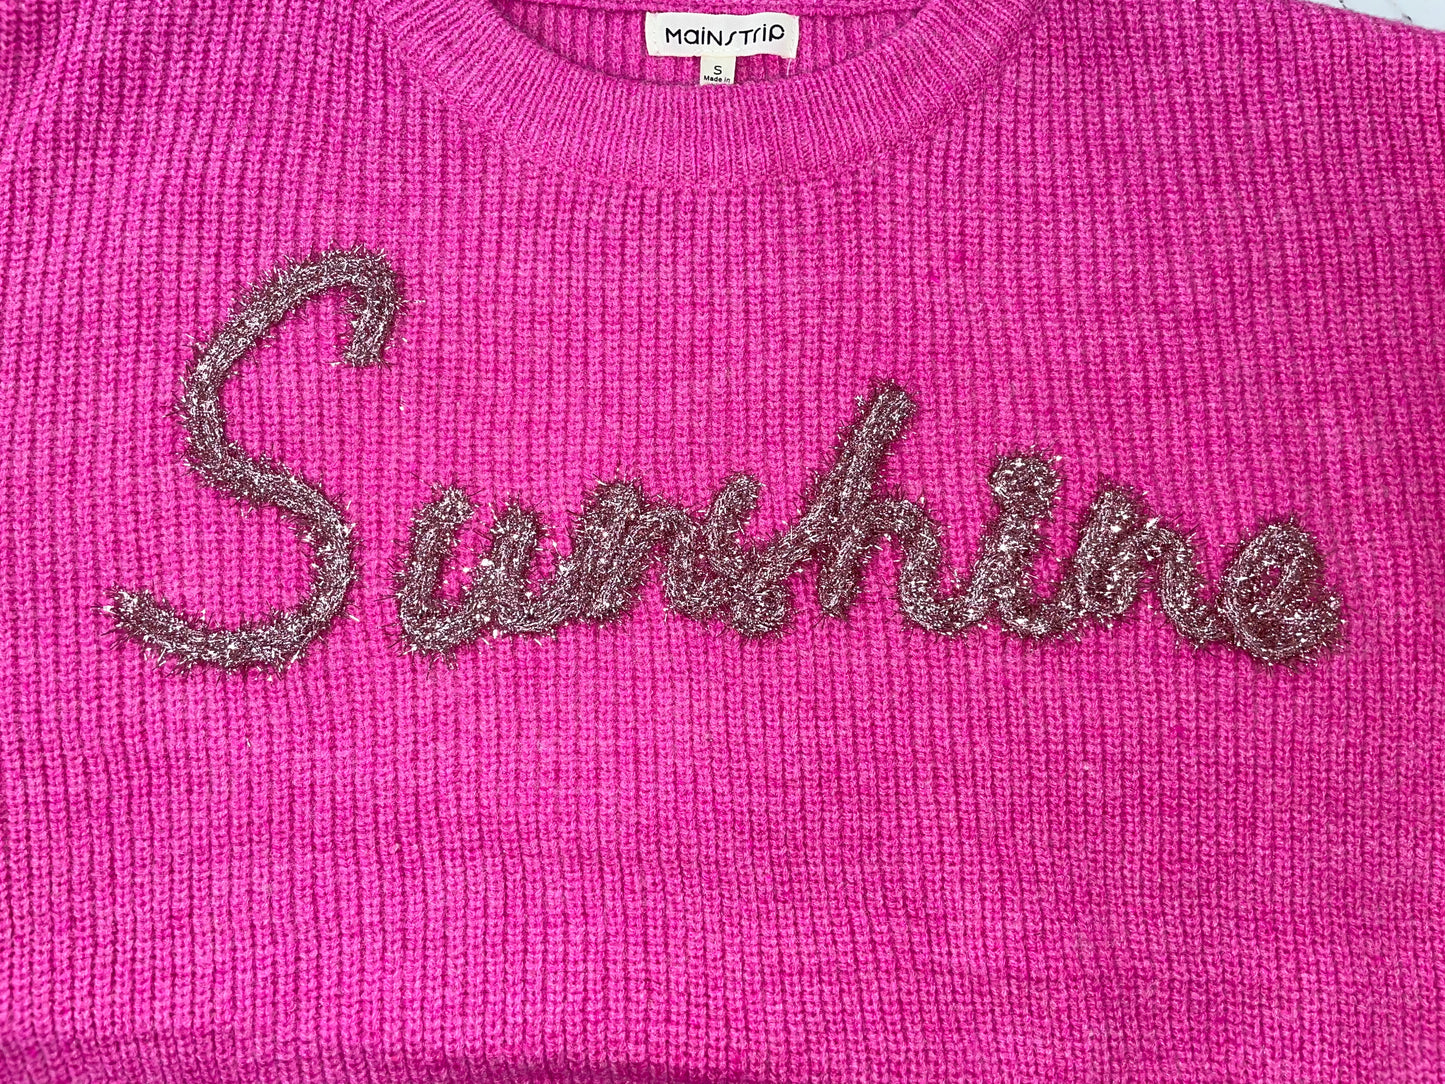 Magenta Sunshine Sweater